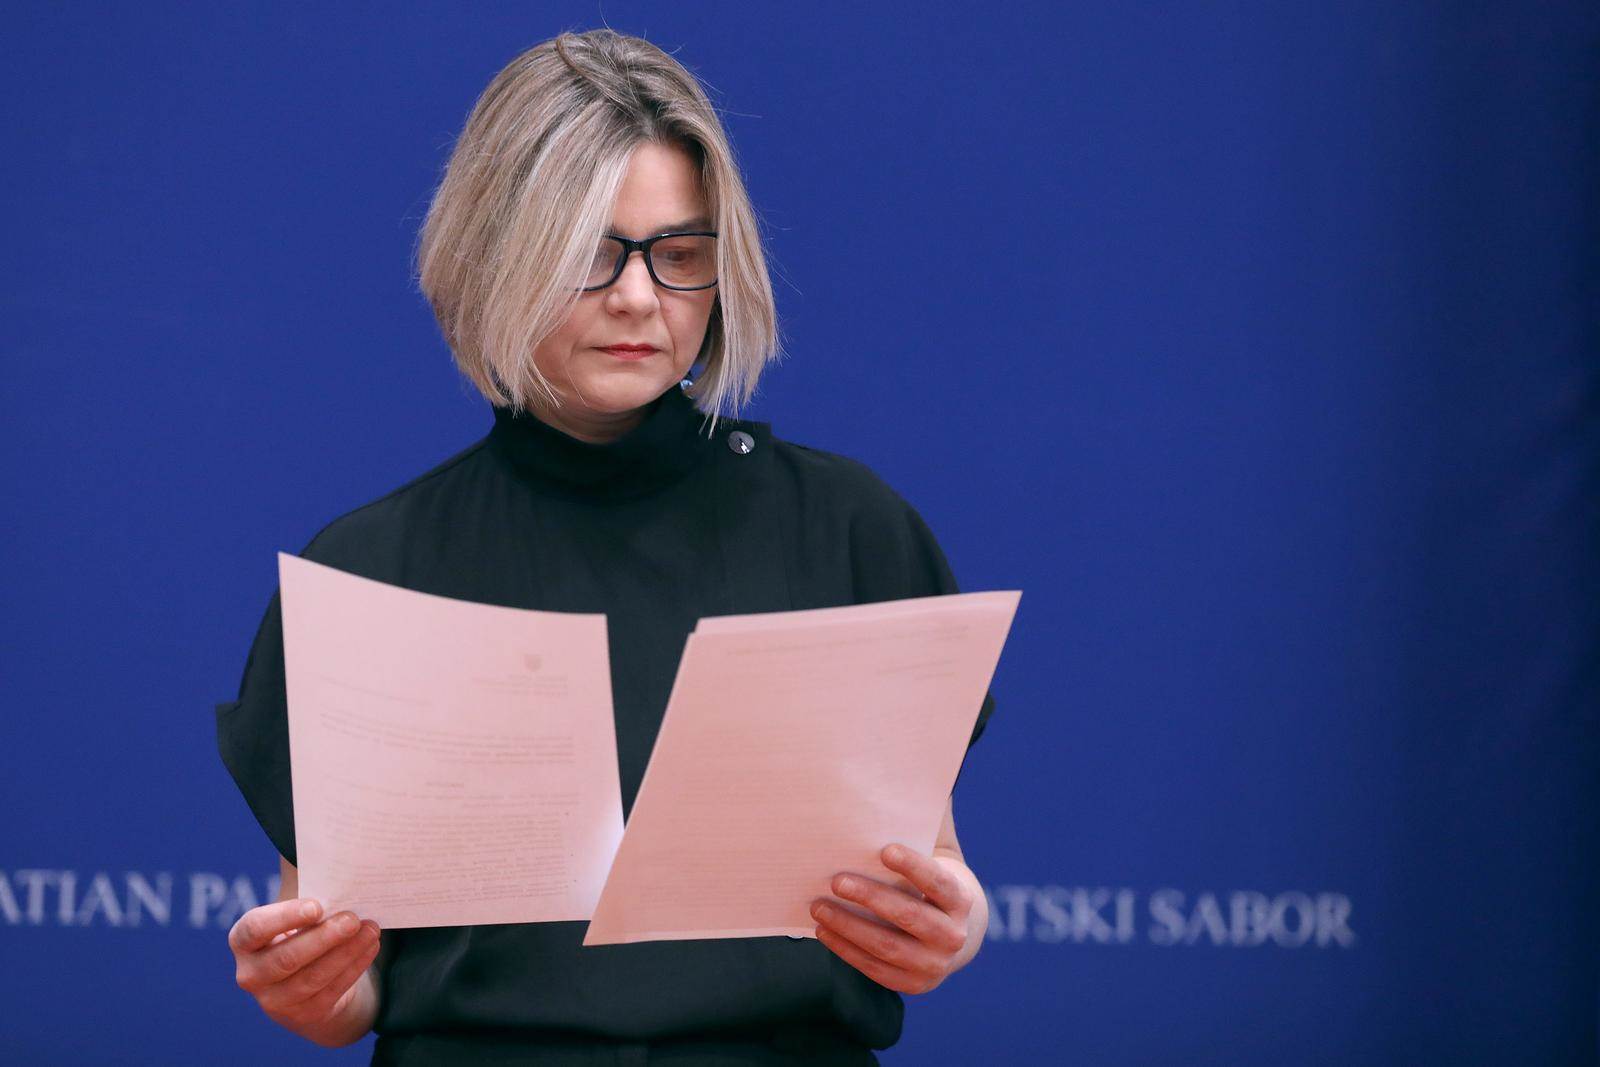  Sandra Benčić, saborska zastupnica i sukoordinatorica stranke Možemo 